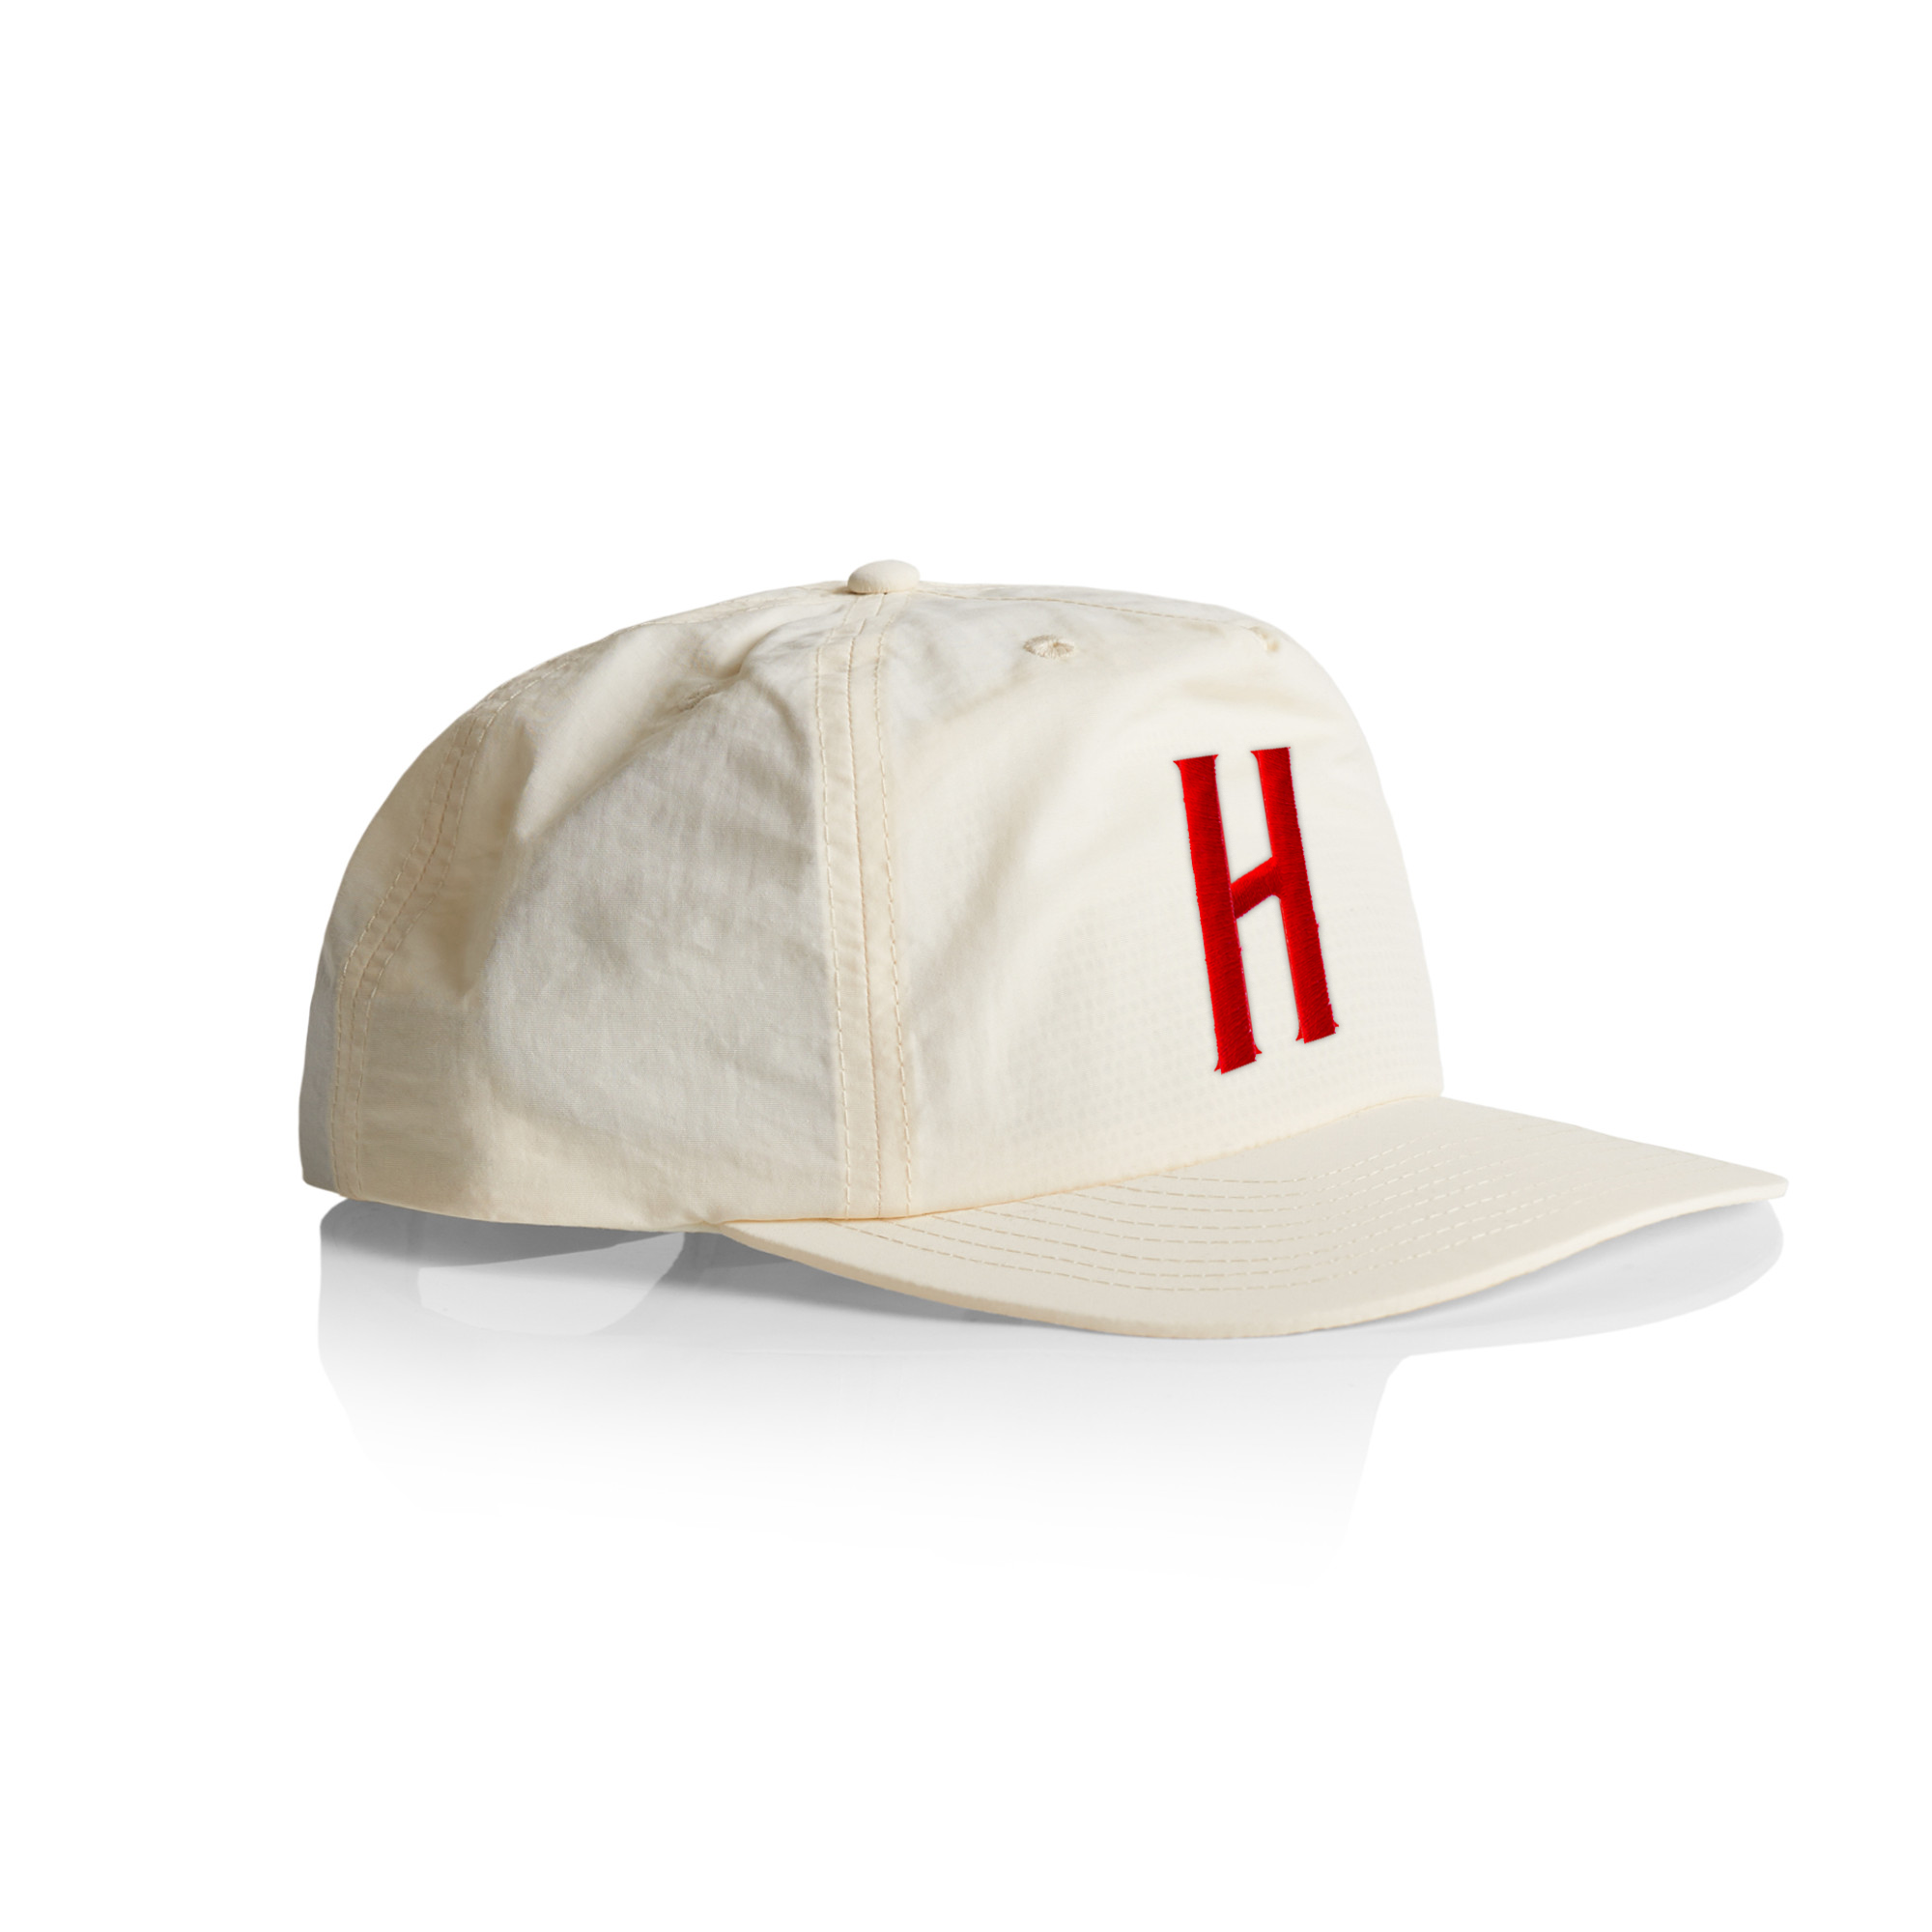 'H' is for Hamodava Surf Cap